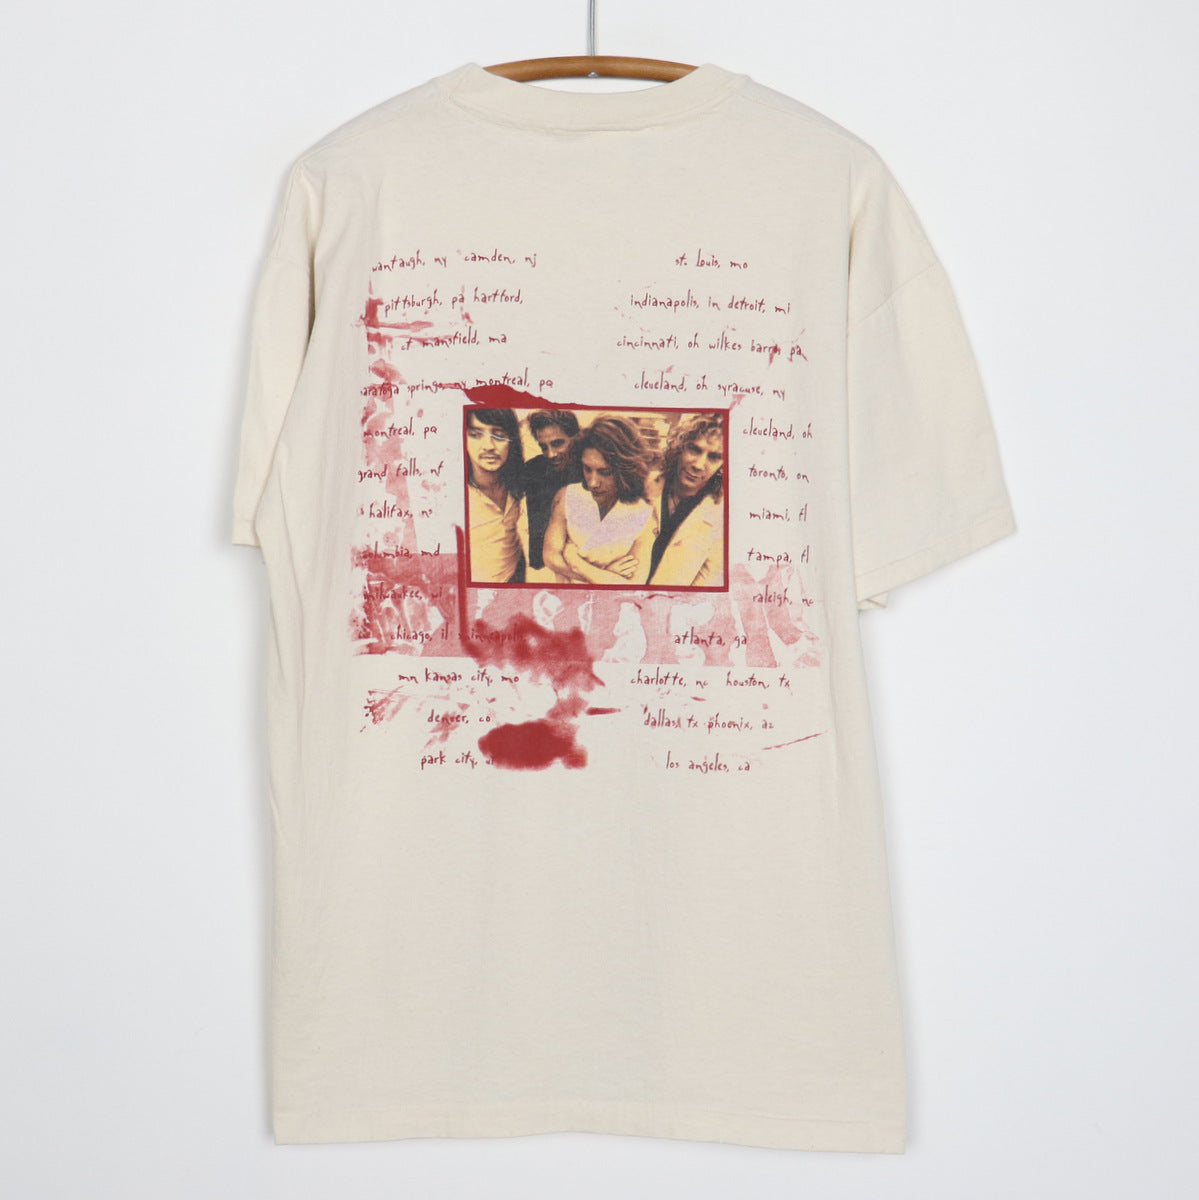 1995 Bon Jovi Tour Shirt